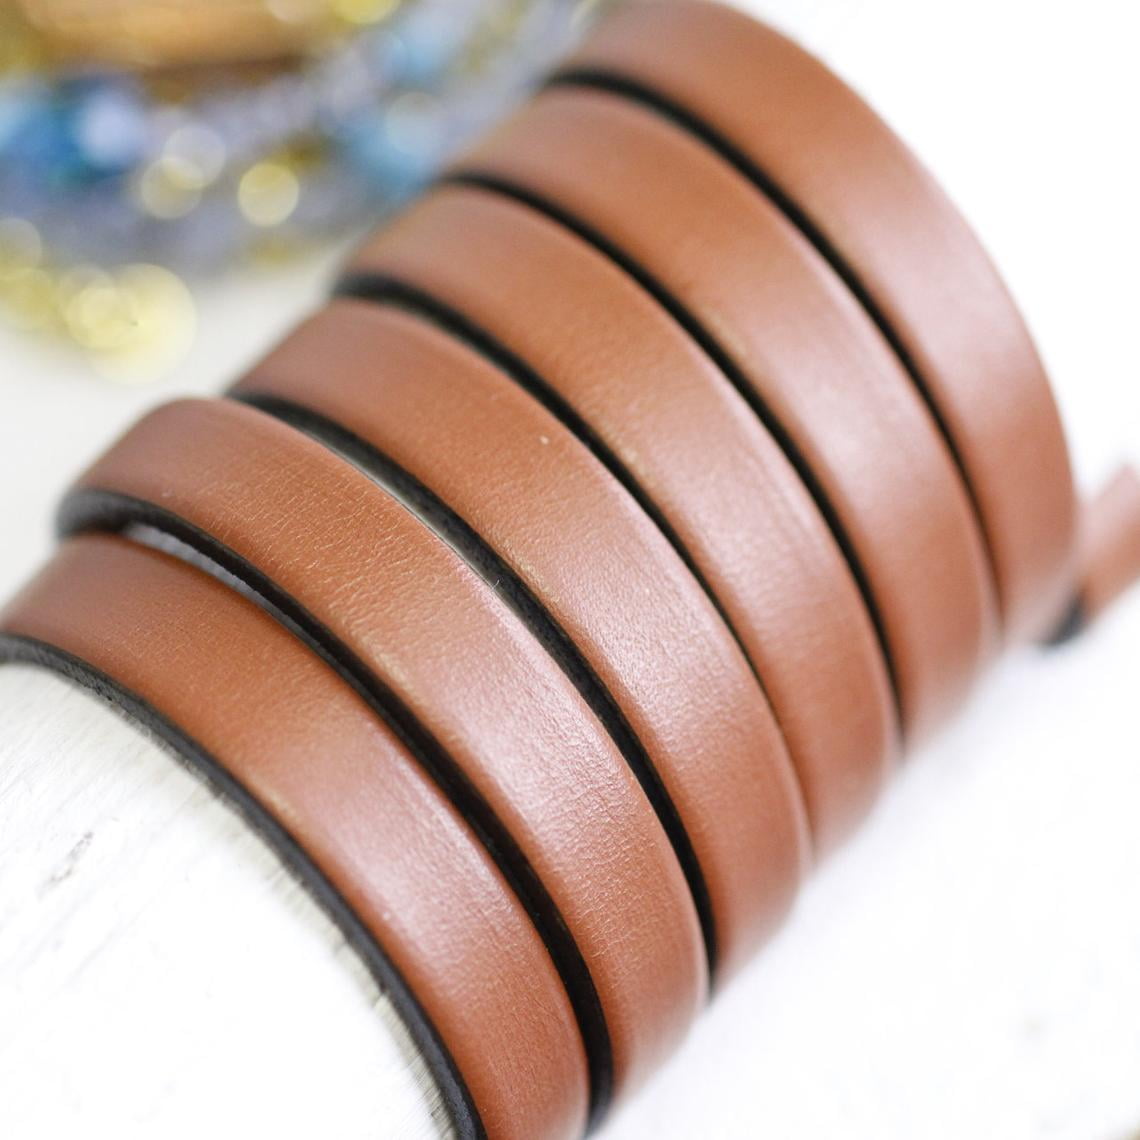 8 Leather Bracelet DIY, how to make leather bracelet